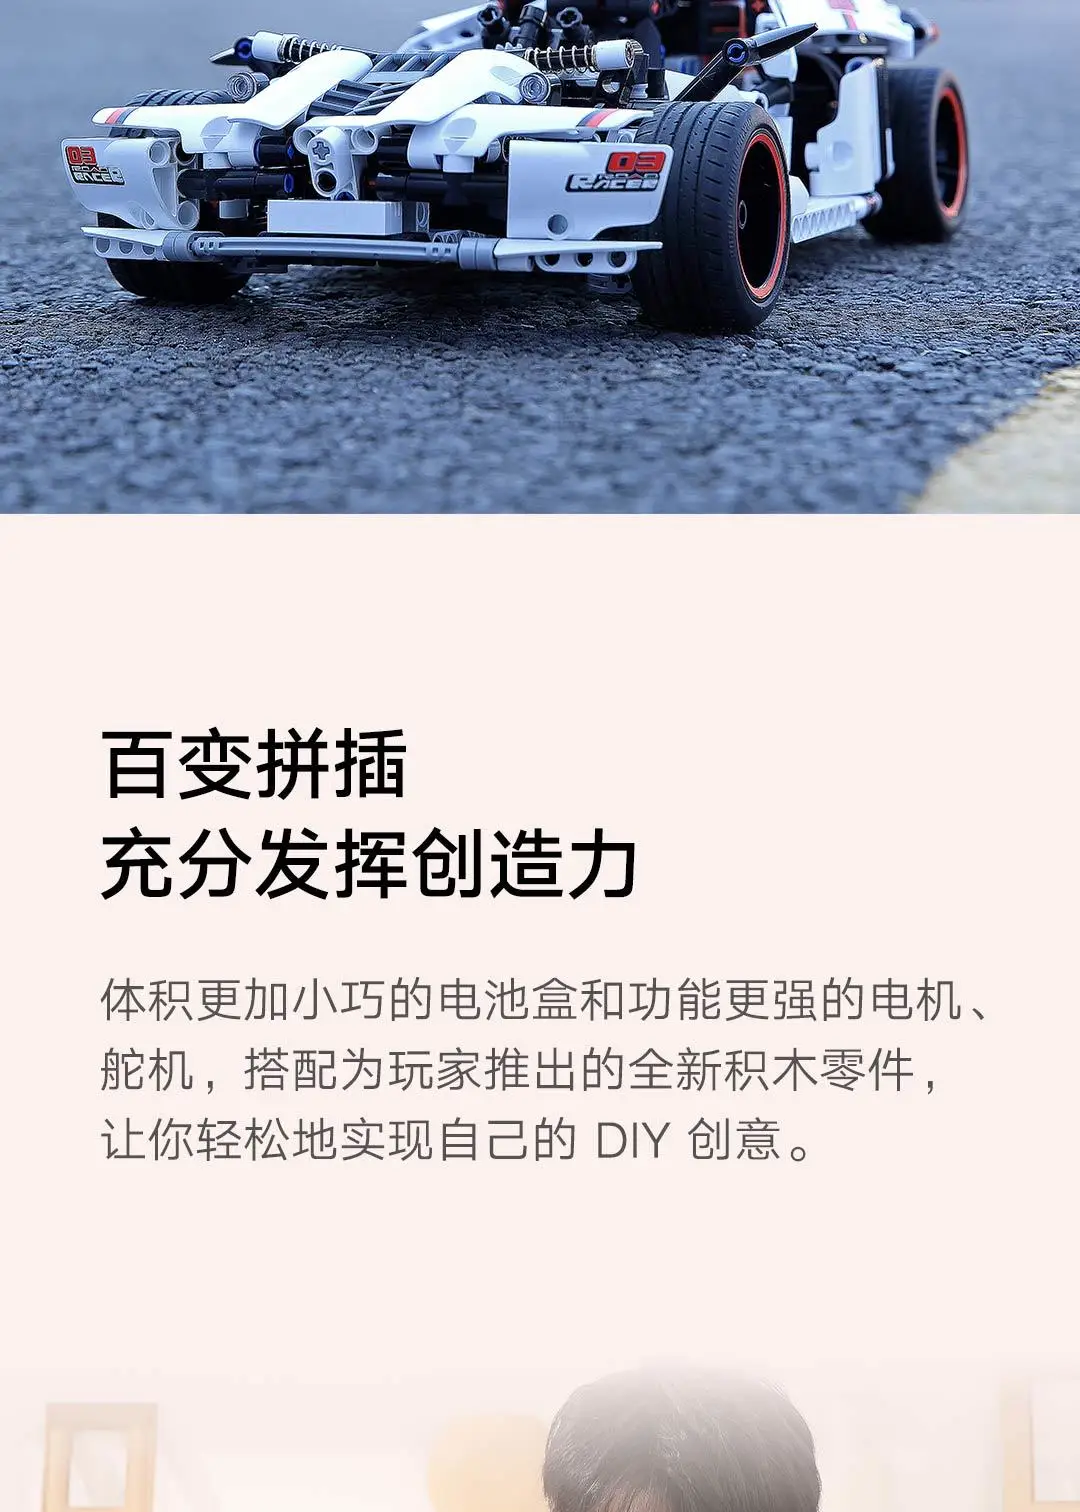 Xiaomi Smart Building Block Highway гоночный автомобиль моделирующий Xiomi Smart Highway Racing для детей мальчиков 3D Трехмерные рисунки